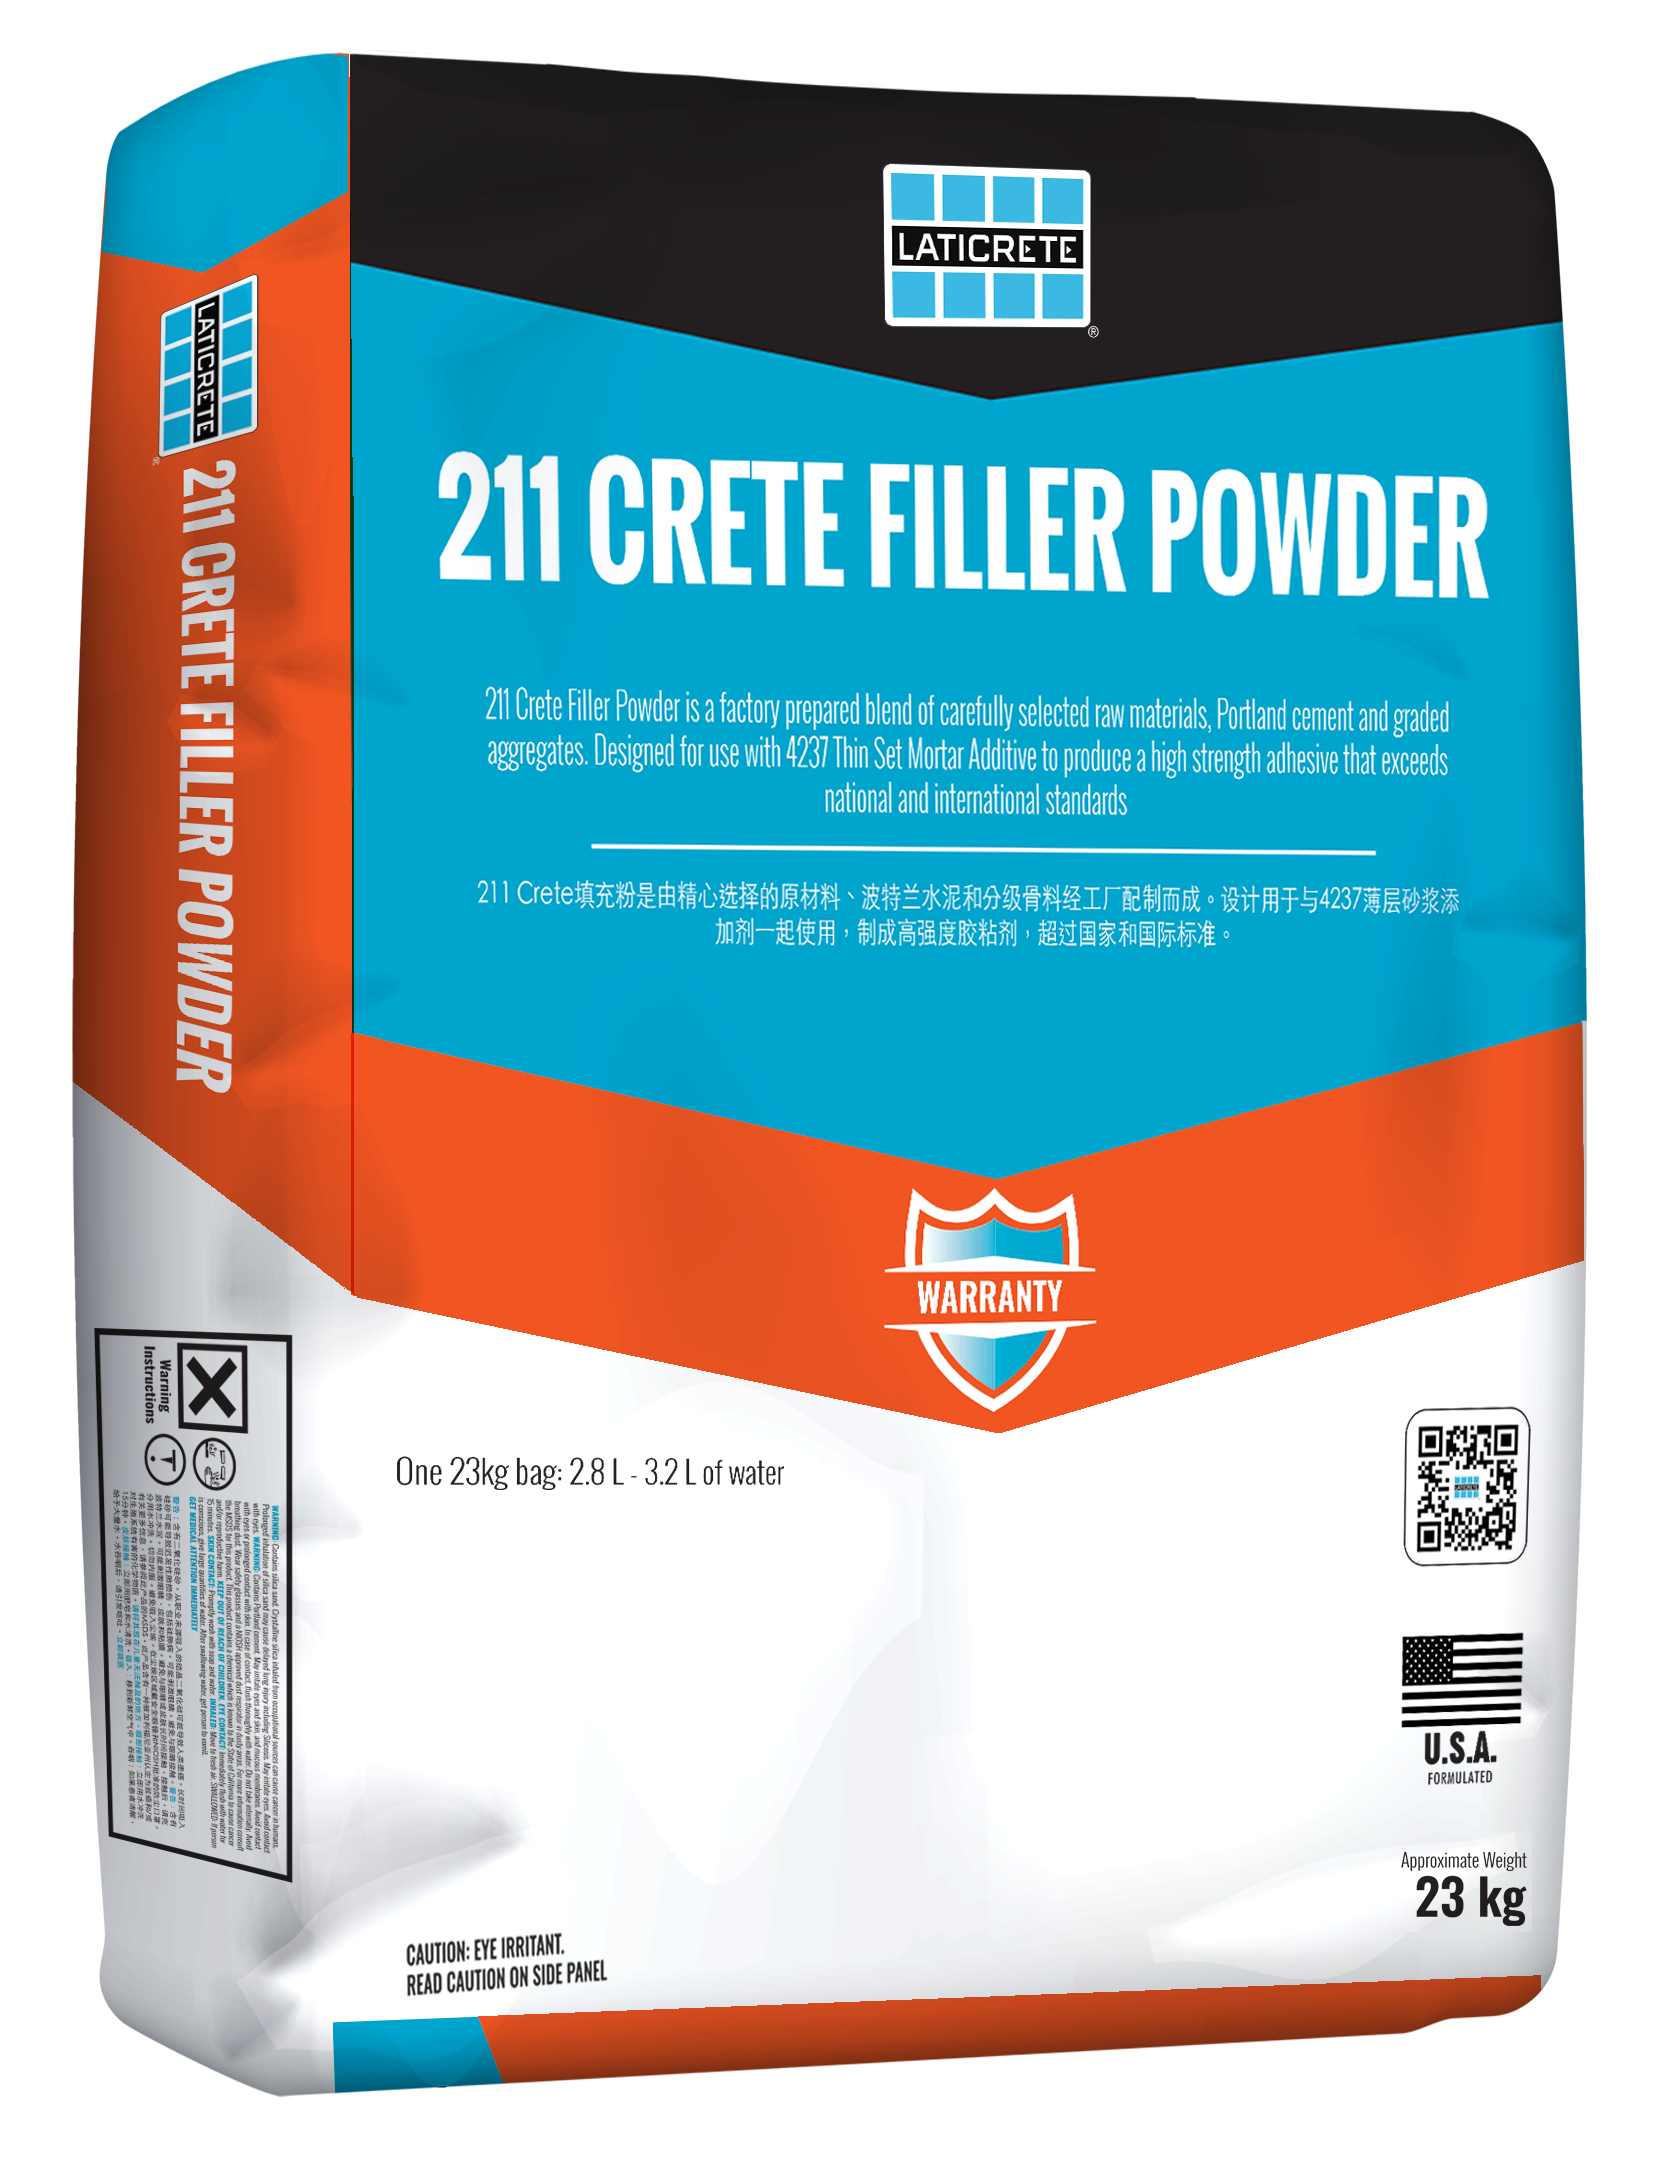 211 Crete Filler Powder